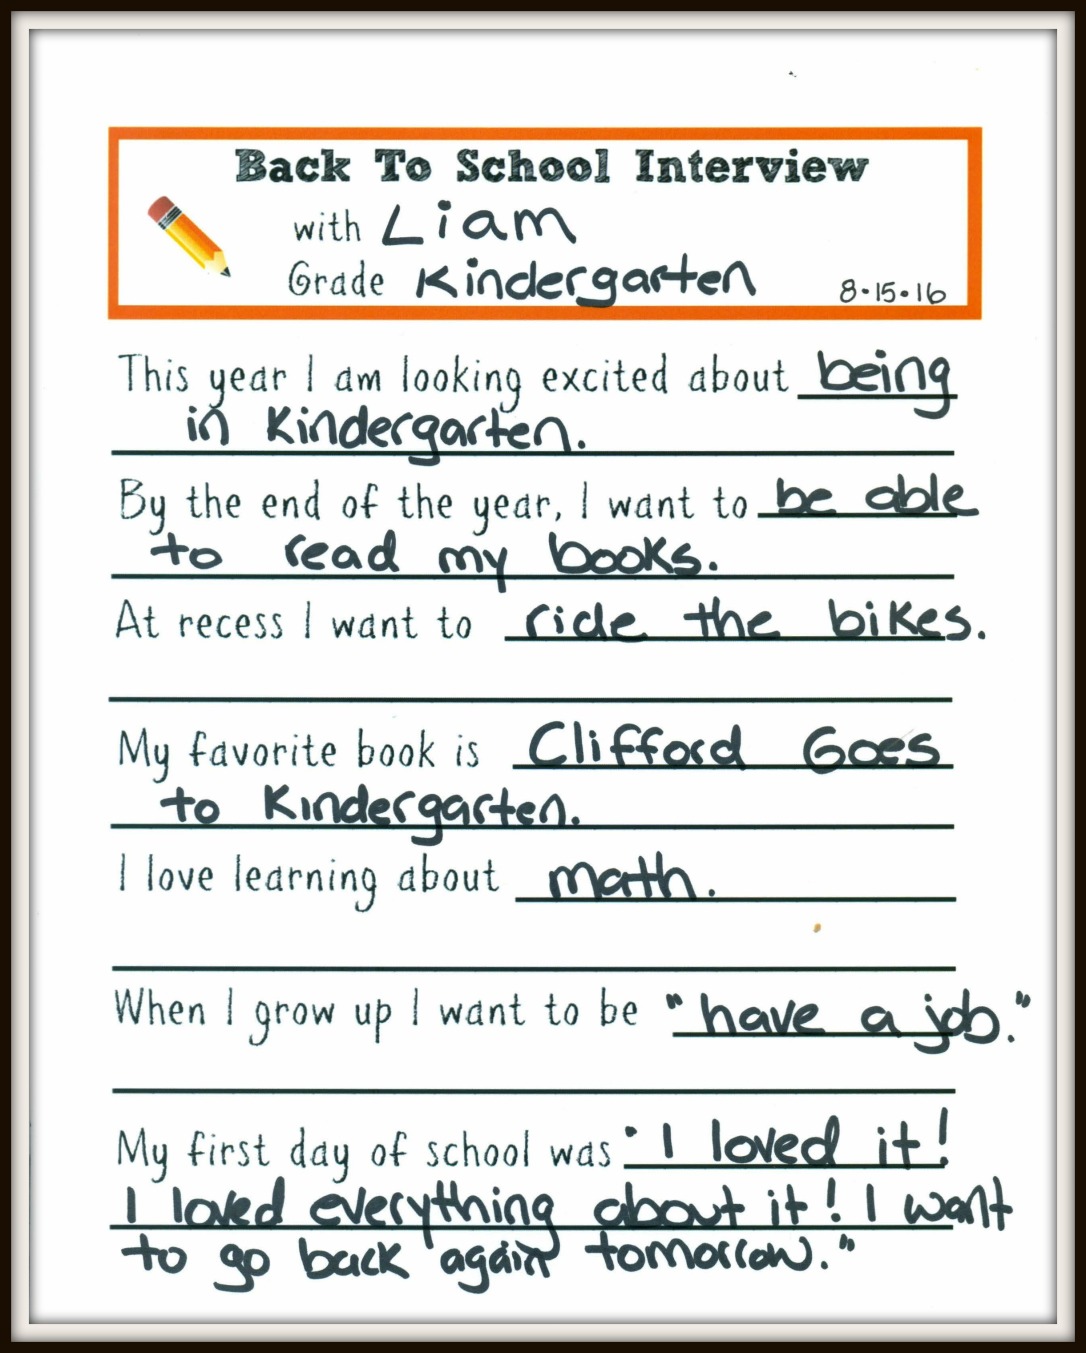 KindergartenBTS_Interview_8.15.16